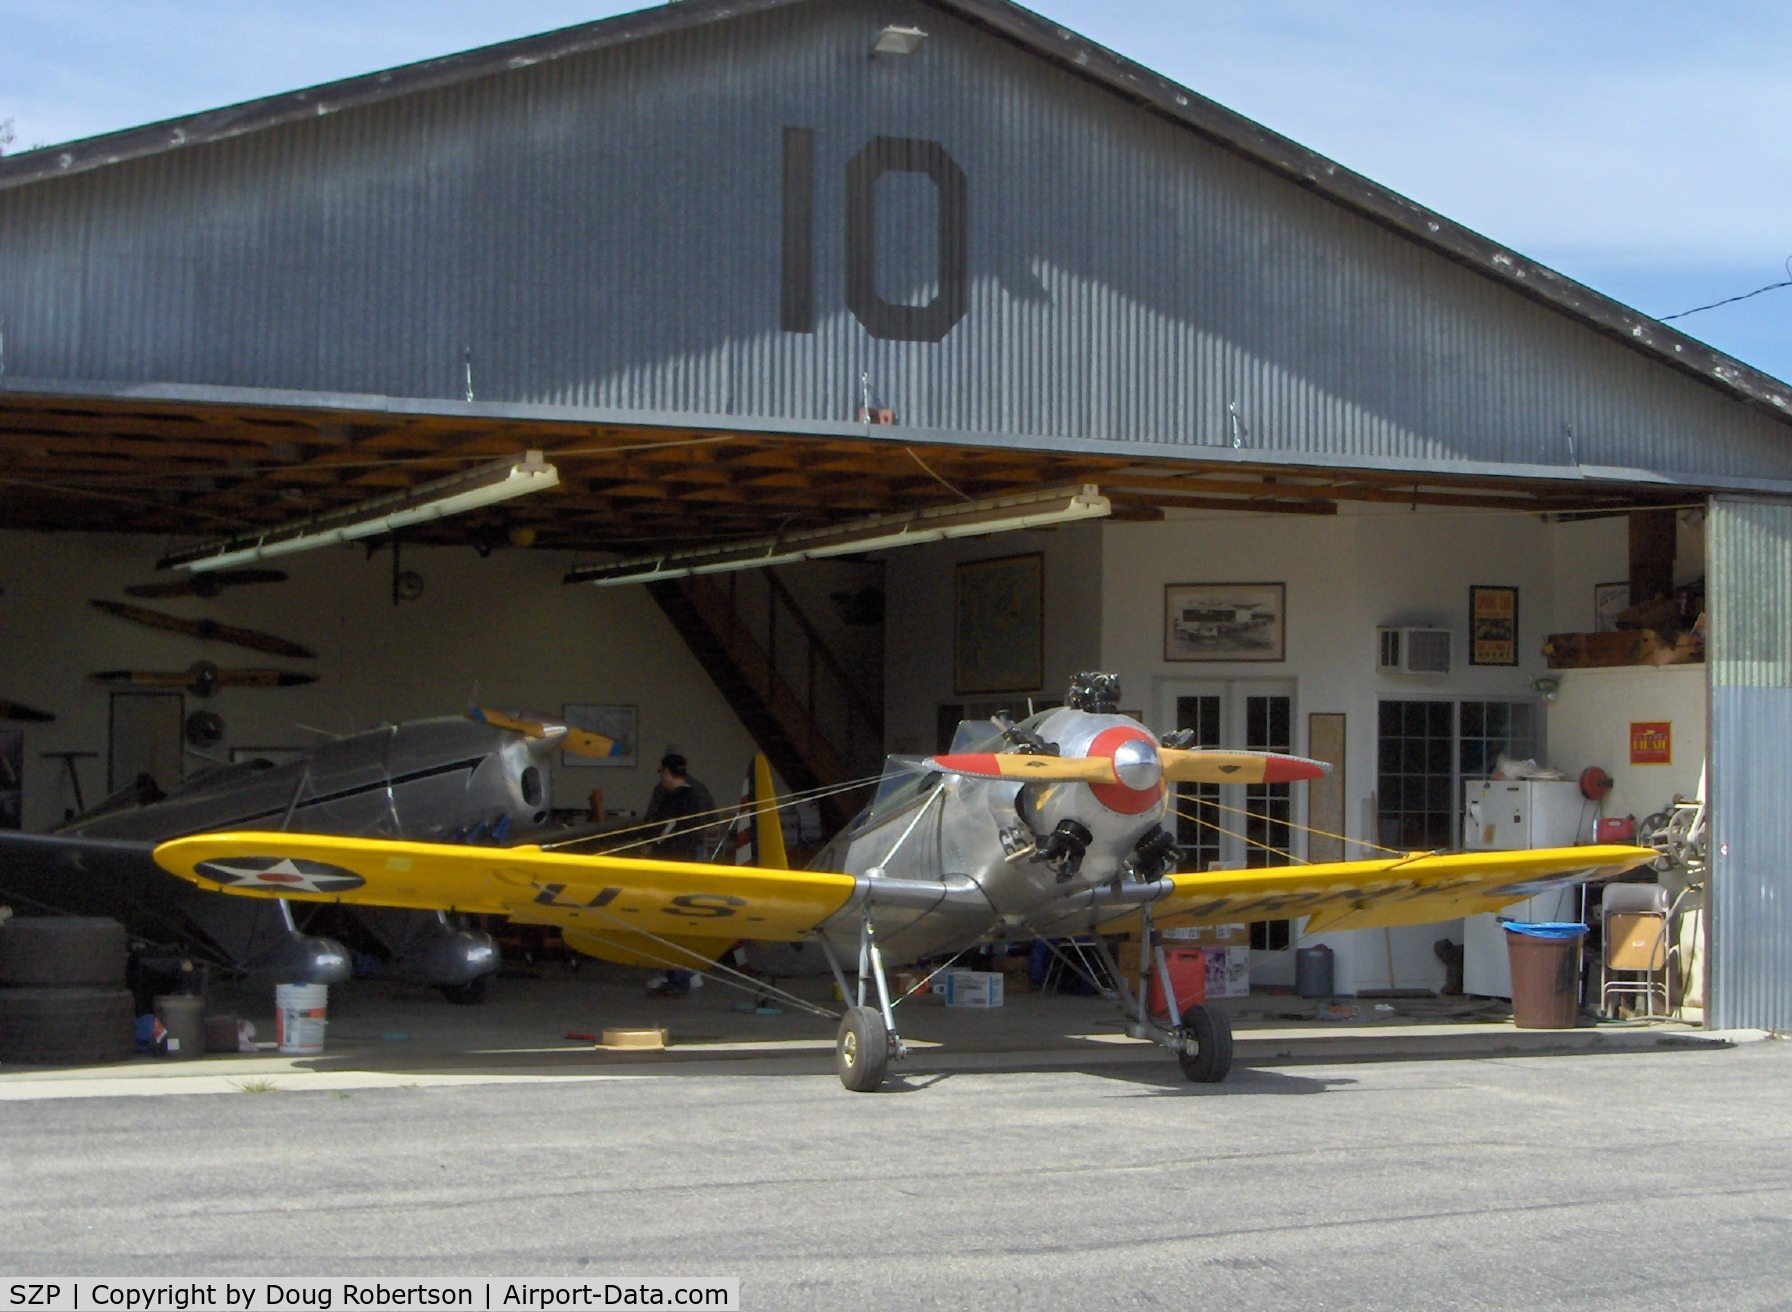 Santa Paula Airport (SZP) - Aviation Museum of Santa Paula, Hangar #4, The Richards Hangar